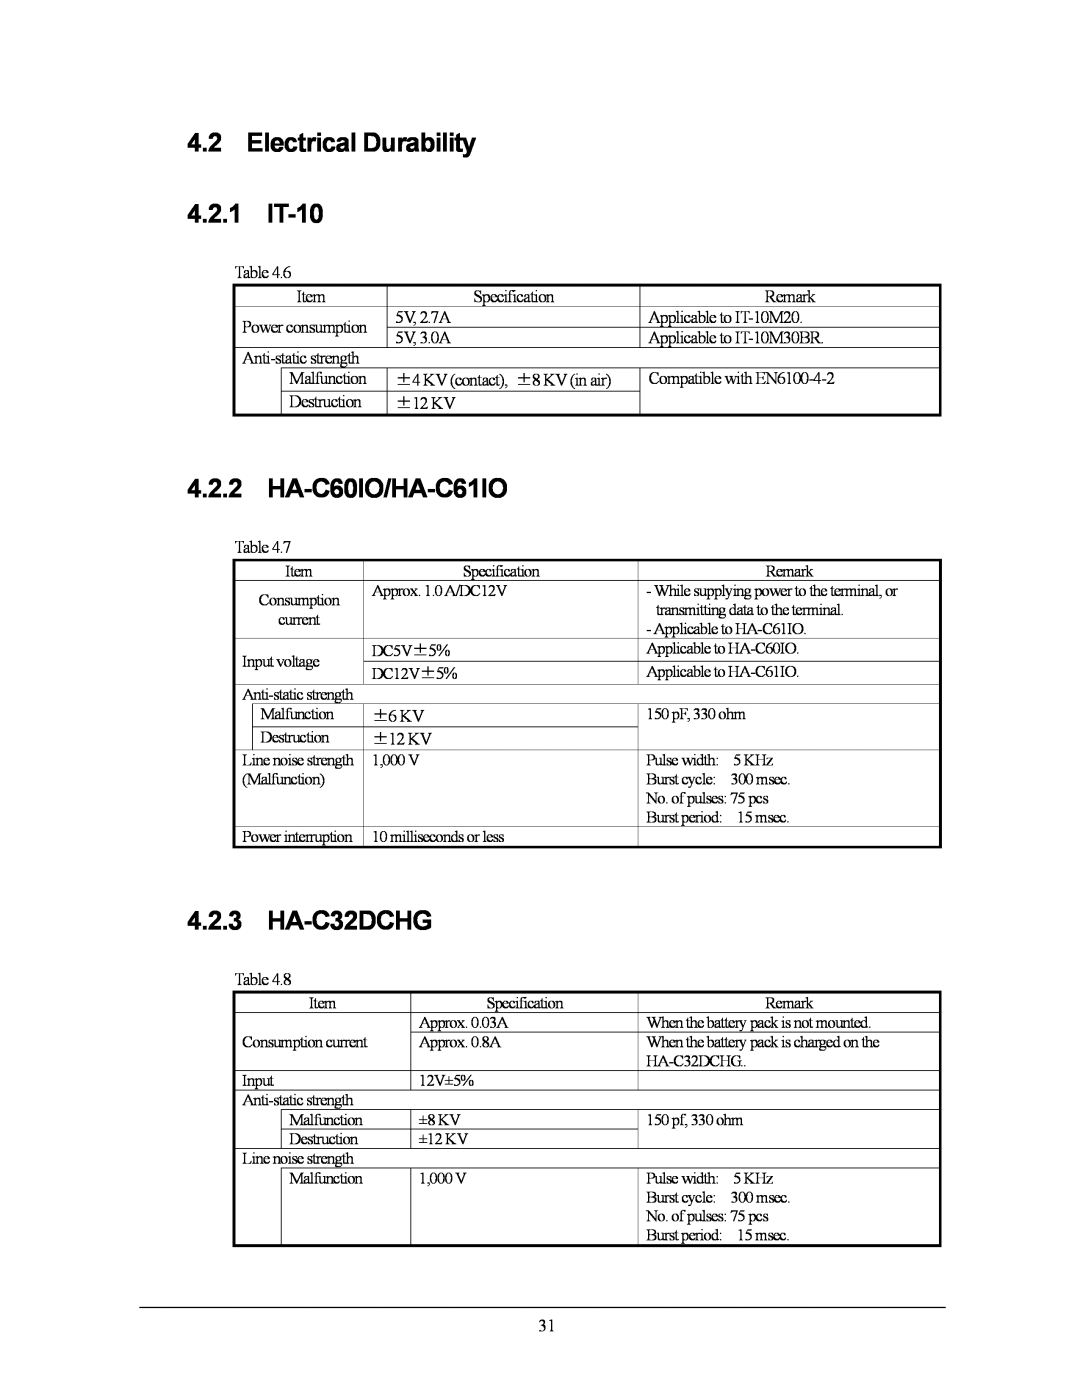 Casio 10M30BR, IT-10M20 manual Electrical Durability, HA-C60IO/HA-C61IO, HA-C32DCHG, 4.2.1, 4.2.3 